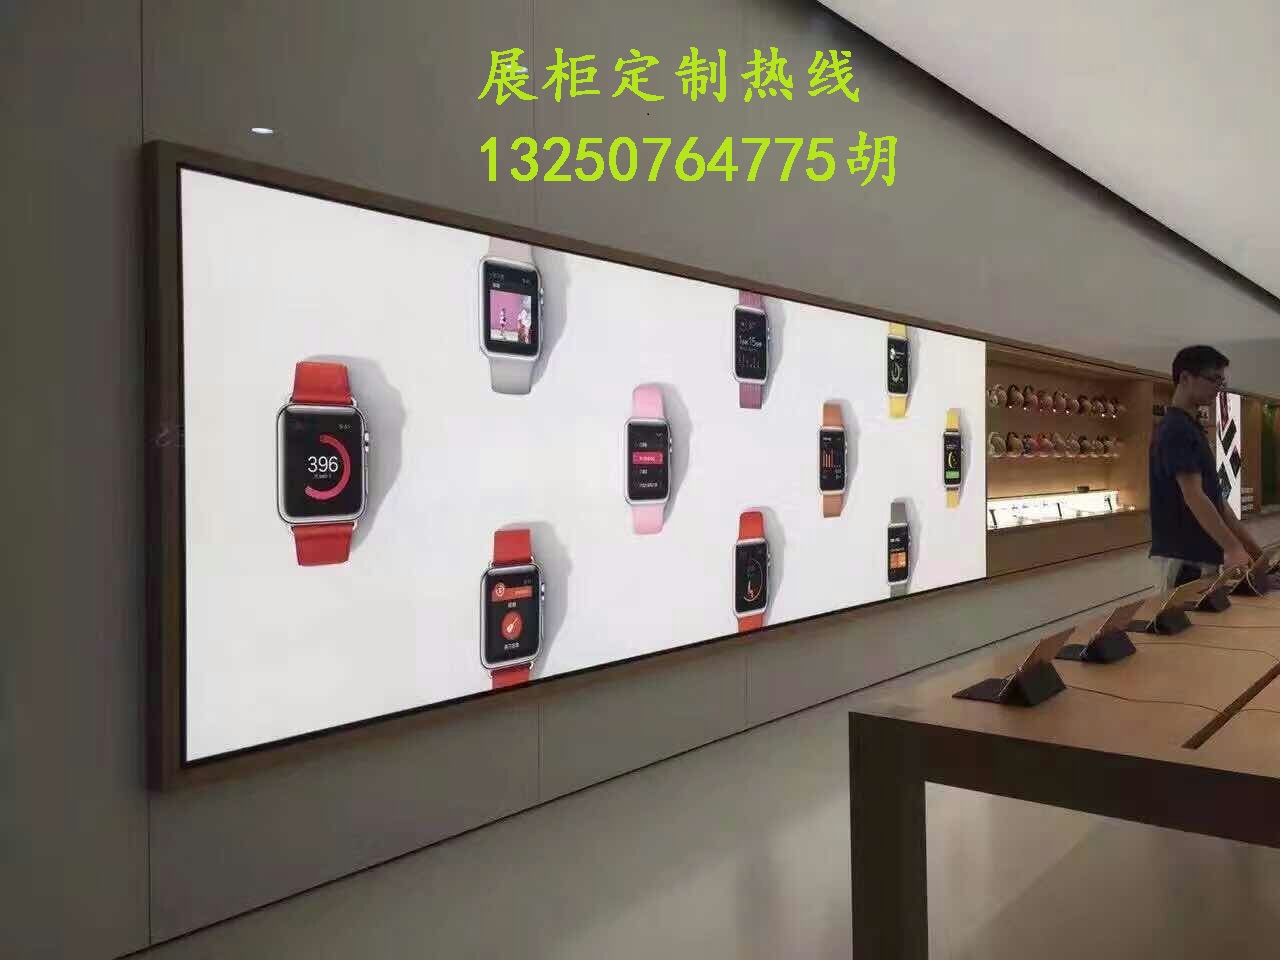 苹果三星华为魅族手机店展示灯箱定制专业软膜灯箱生产厂家